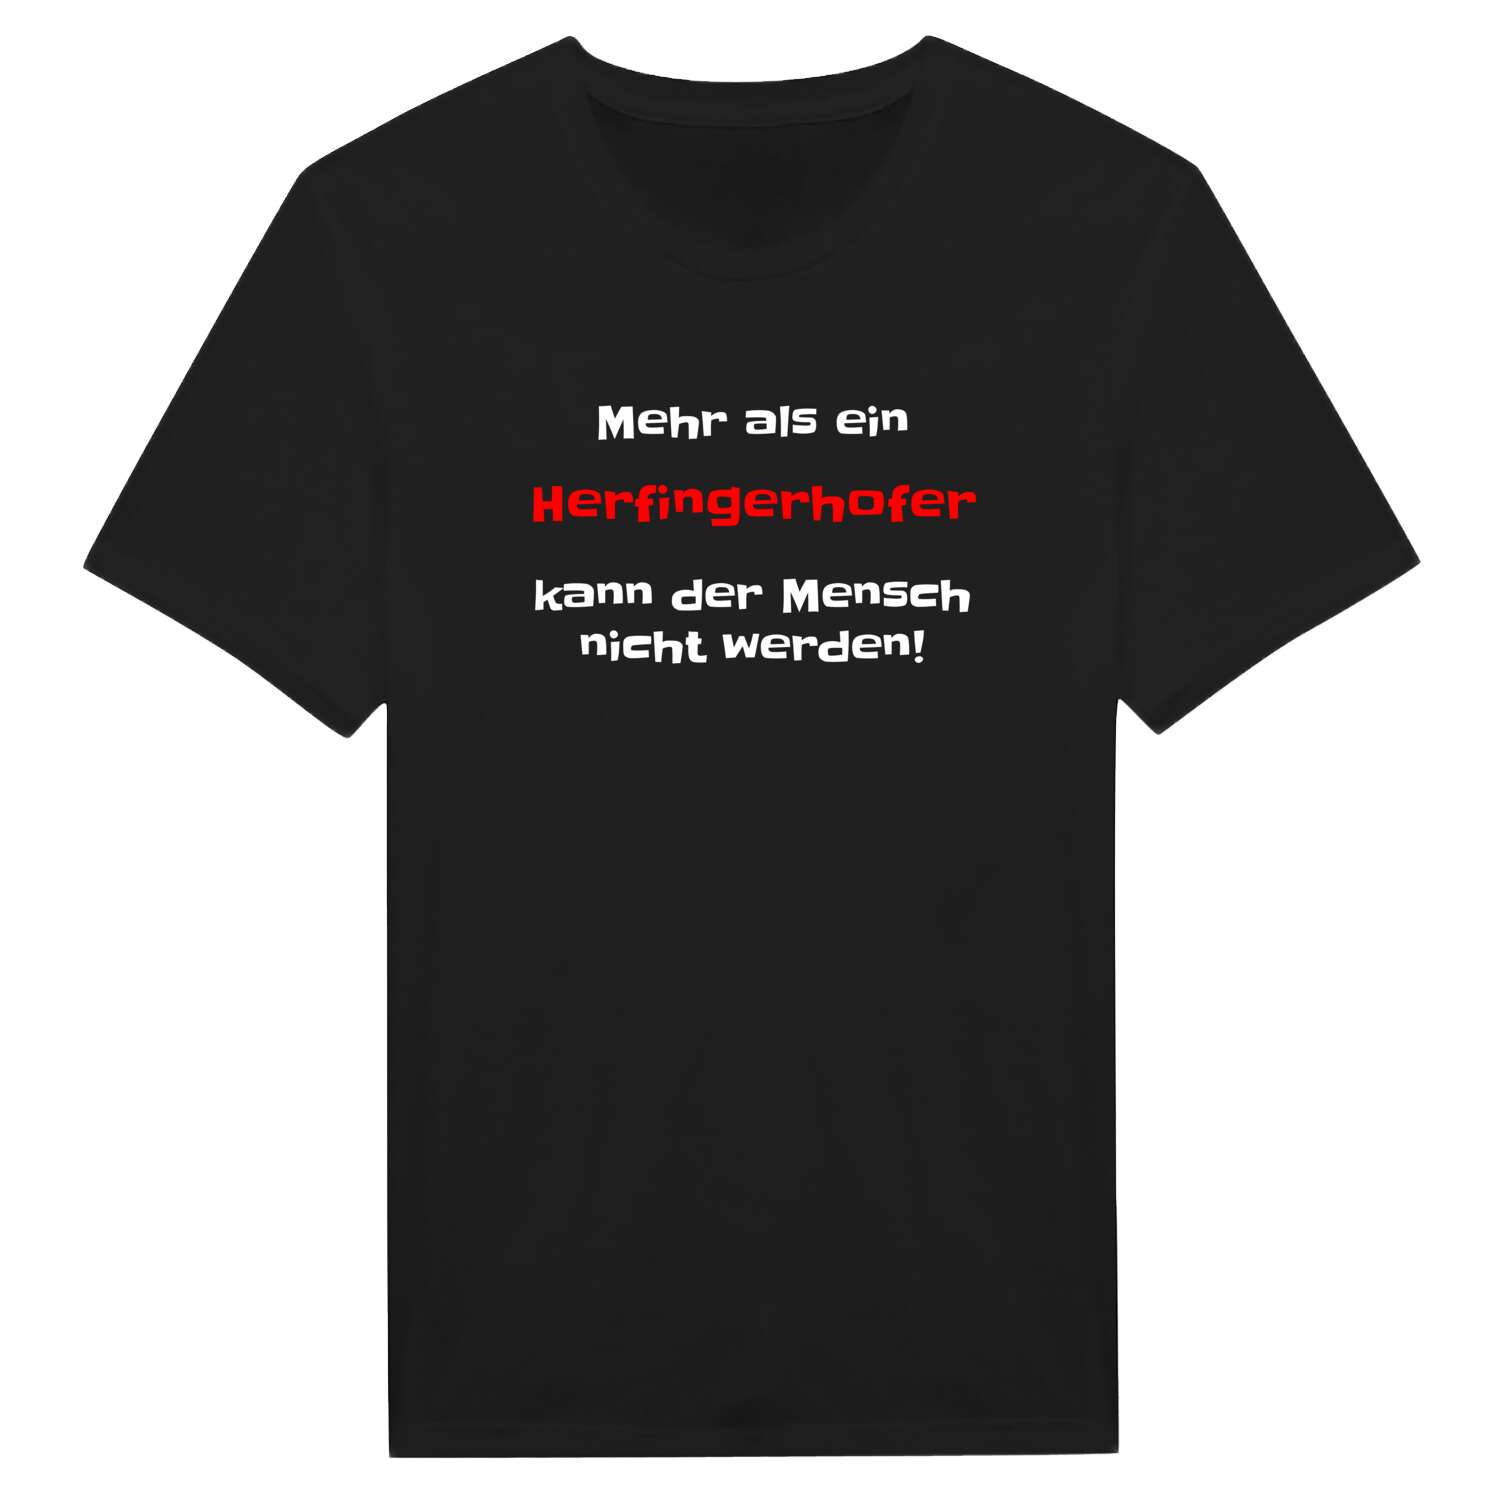 Herfingerhof T-Shirt »Mehr als ein«